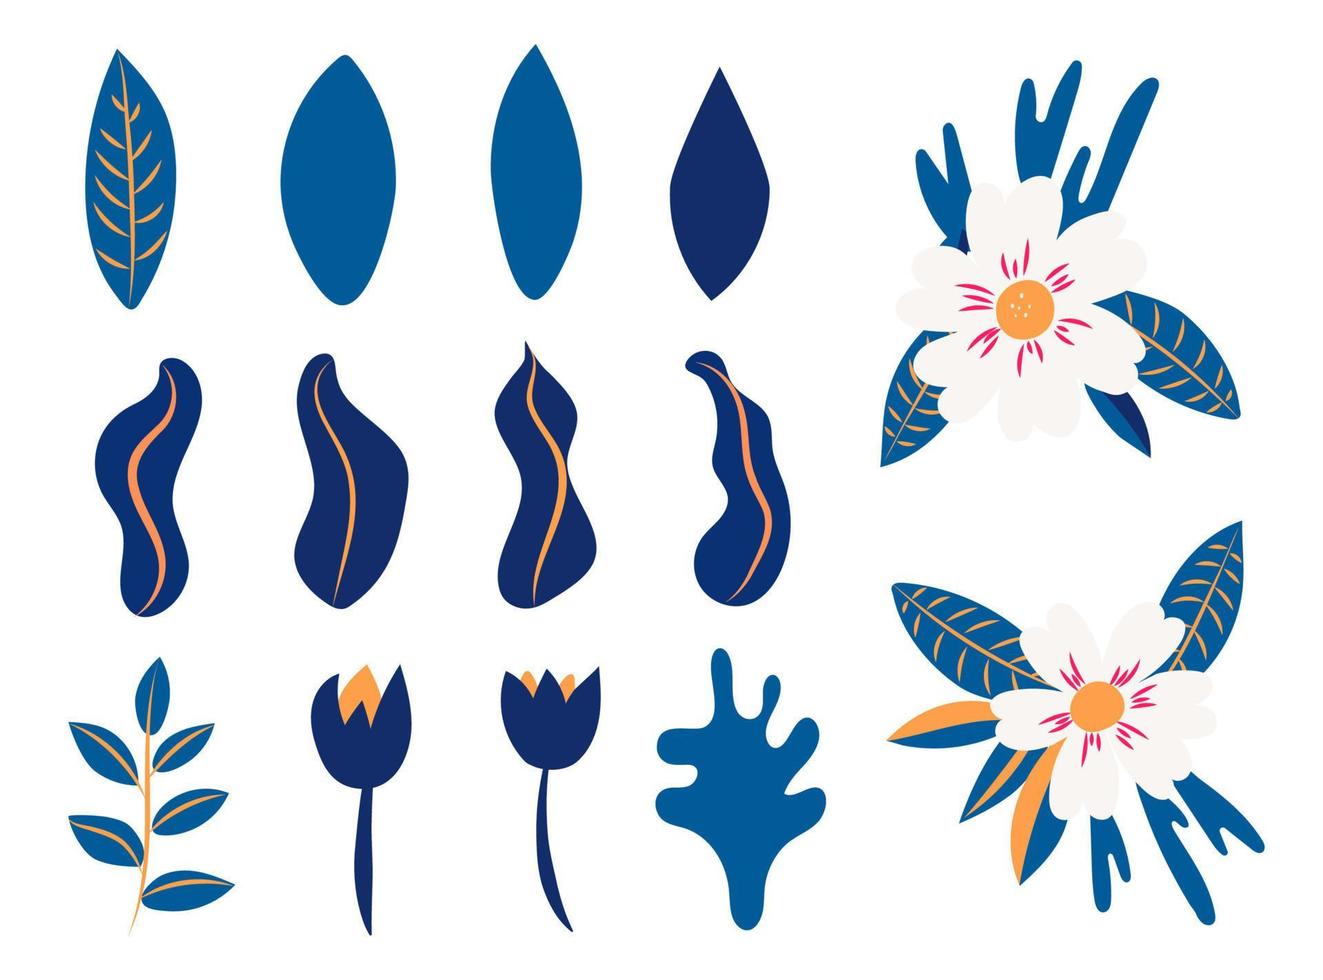 samling av blommor och blad av blommor. vektor blå och vita blommor. vårkonsttryck med botaniska elementaffischer för vårens semester. ikoner markerade på en vit bakgrund